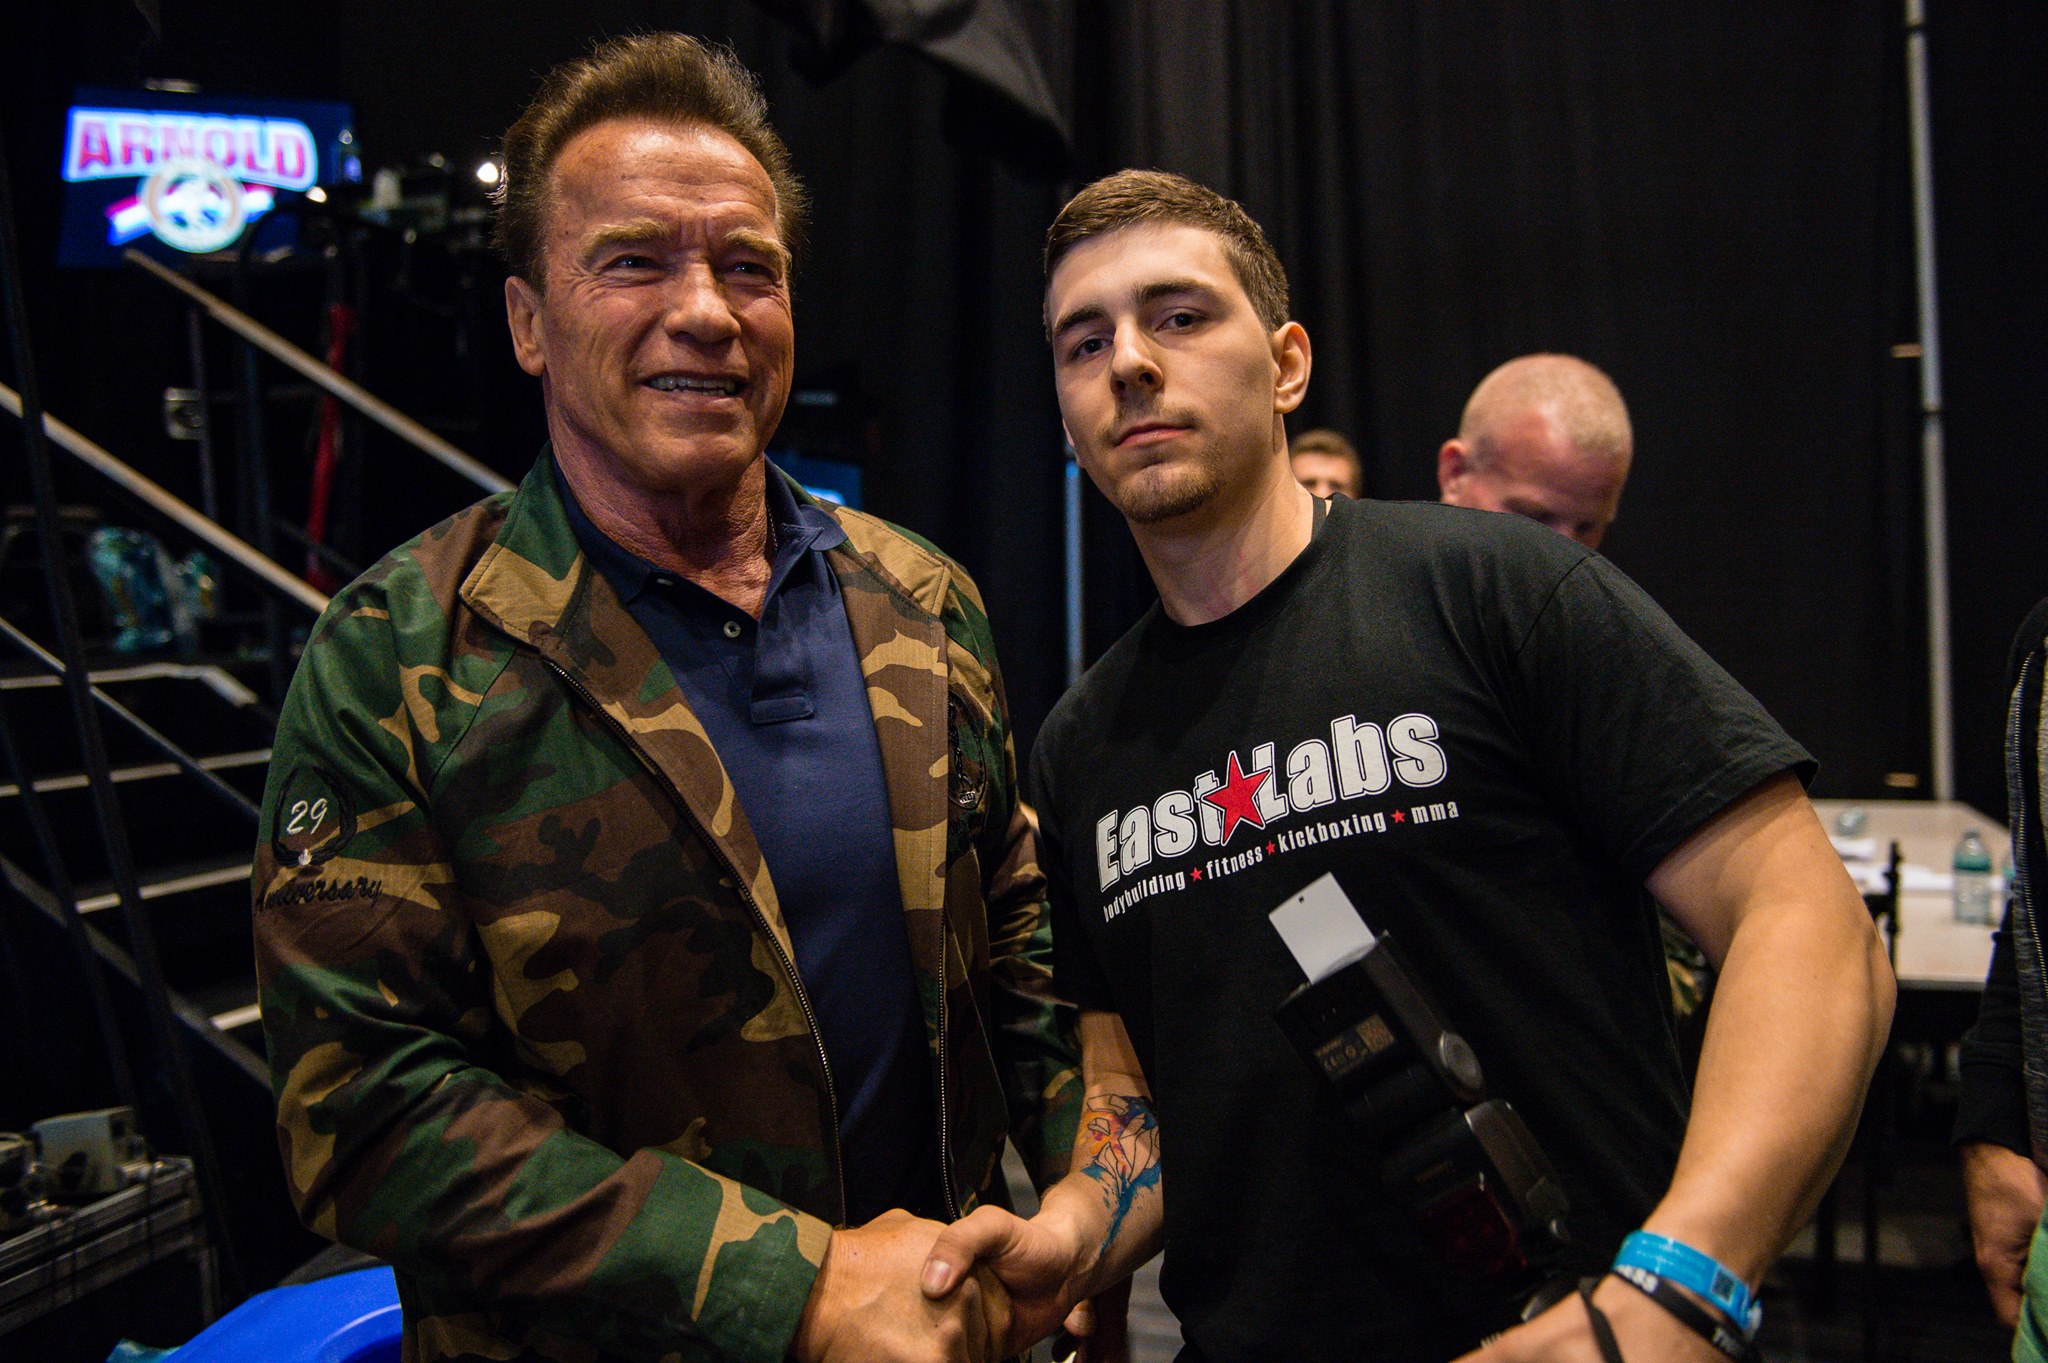 Jakub sa vďaka svojej práci stretol aj s Arnoldom Schwarzeneggerom.